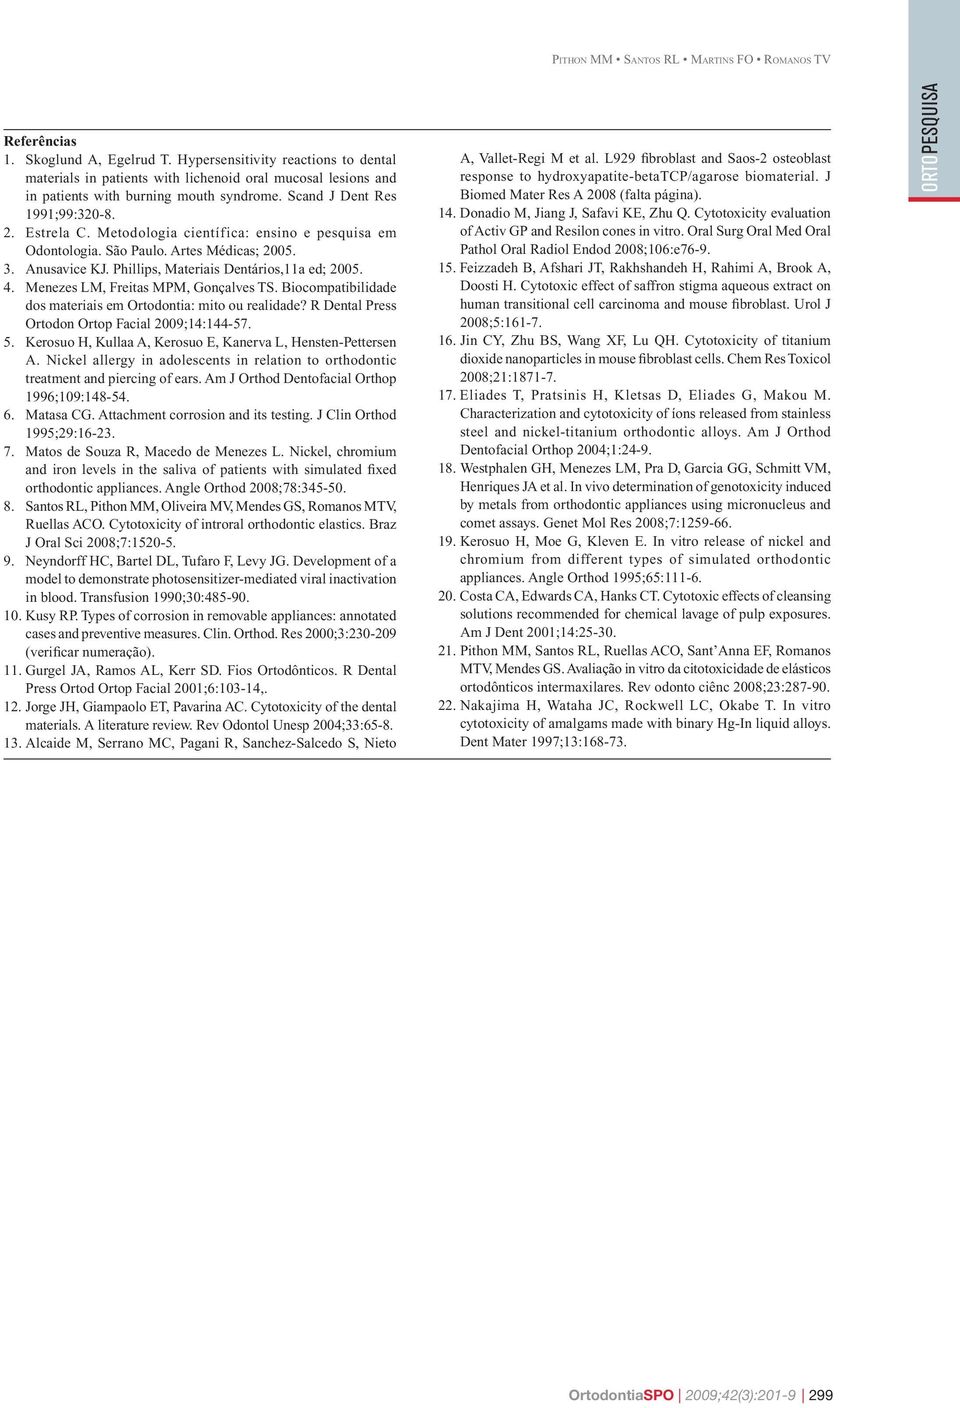 Menezes LM, Freitas MPM, Gonçalves TS. Biocompatibilidade dos materiais em Ortodontia: mito ou realidade? R Dental Press Ortodon Ortop Facial 2009;14:144-57. 5.